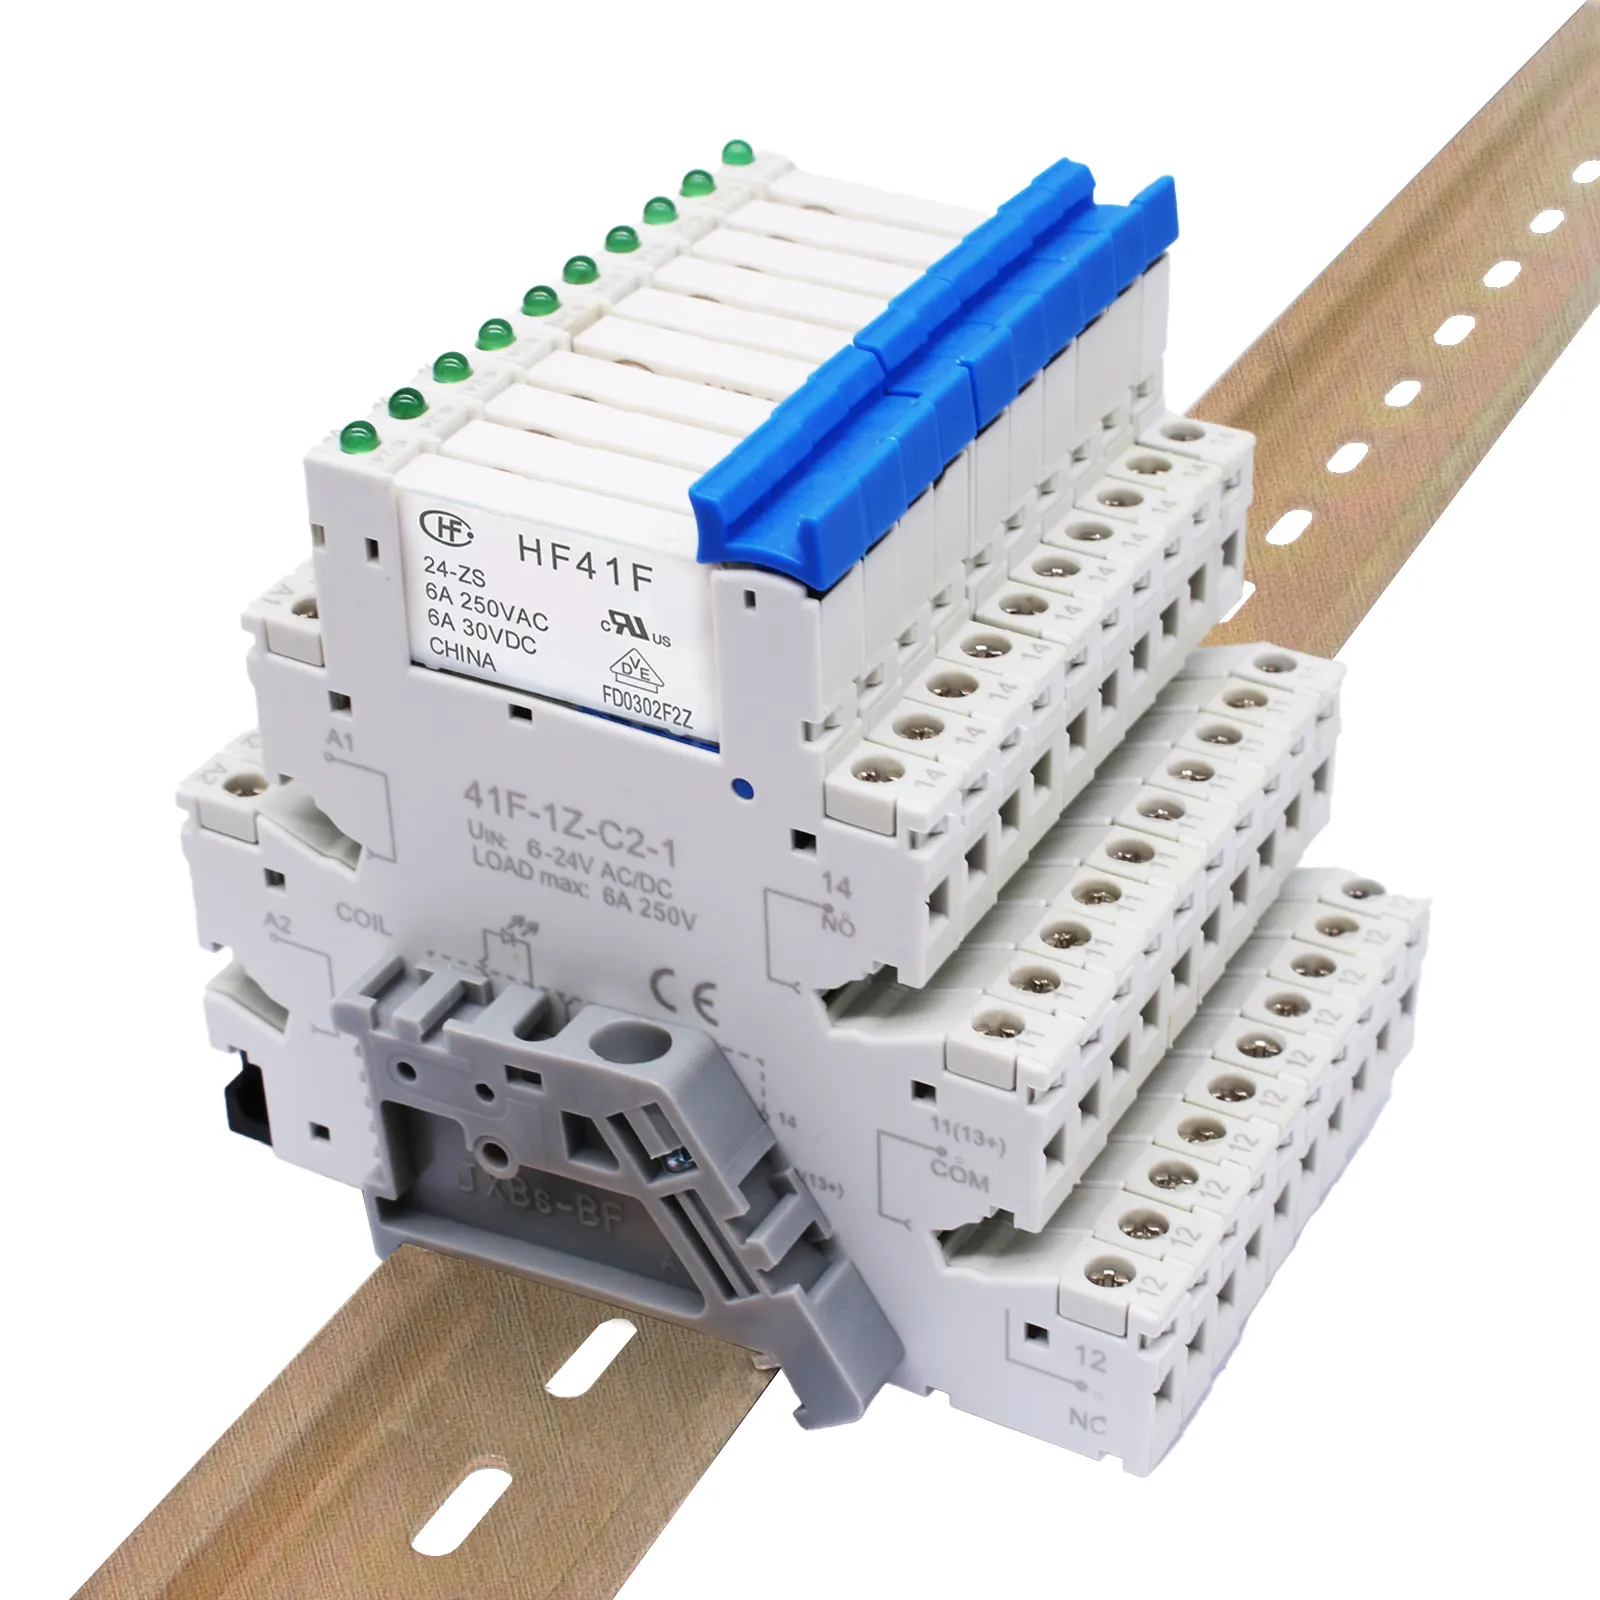 SSR SOCKET for HF41f 12v 24v din rail slim relay slim relay 6A thin interface relay 24v ssr din rail with socket HF41F